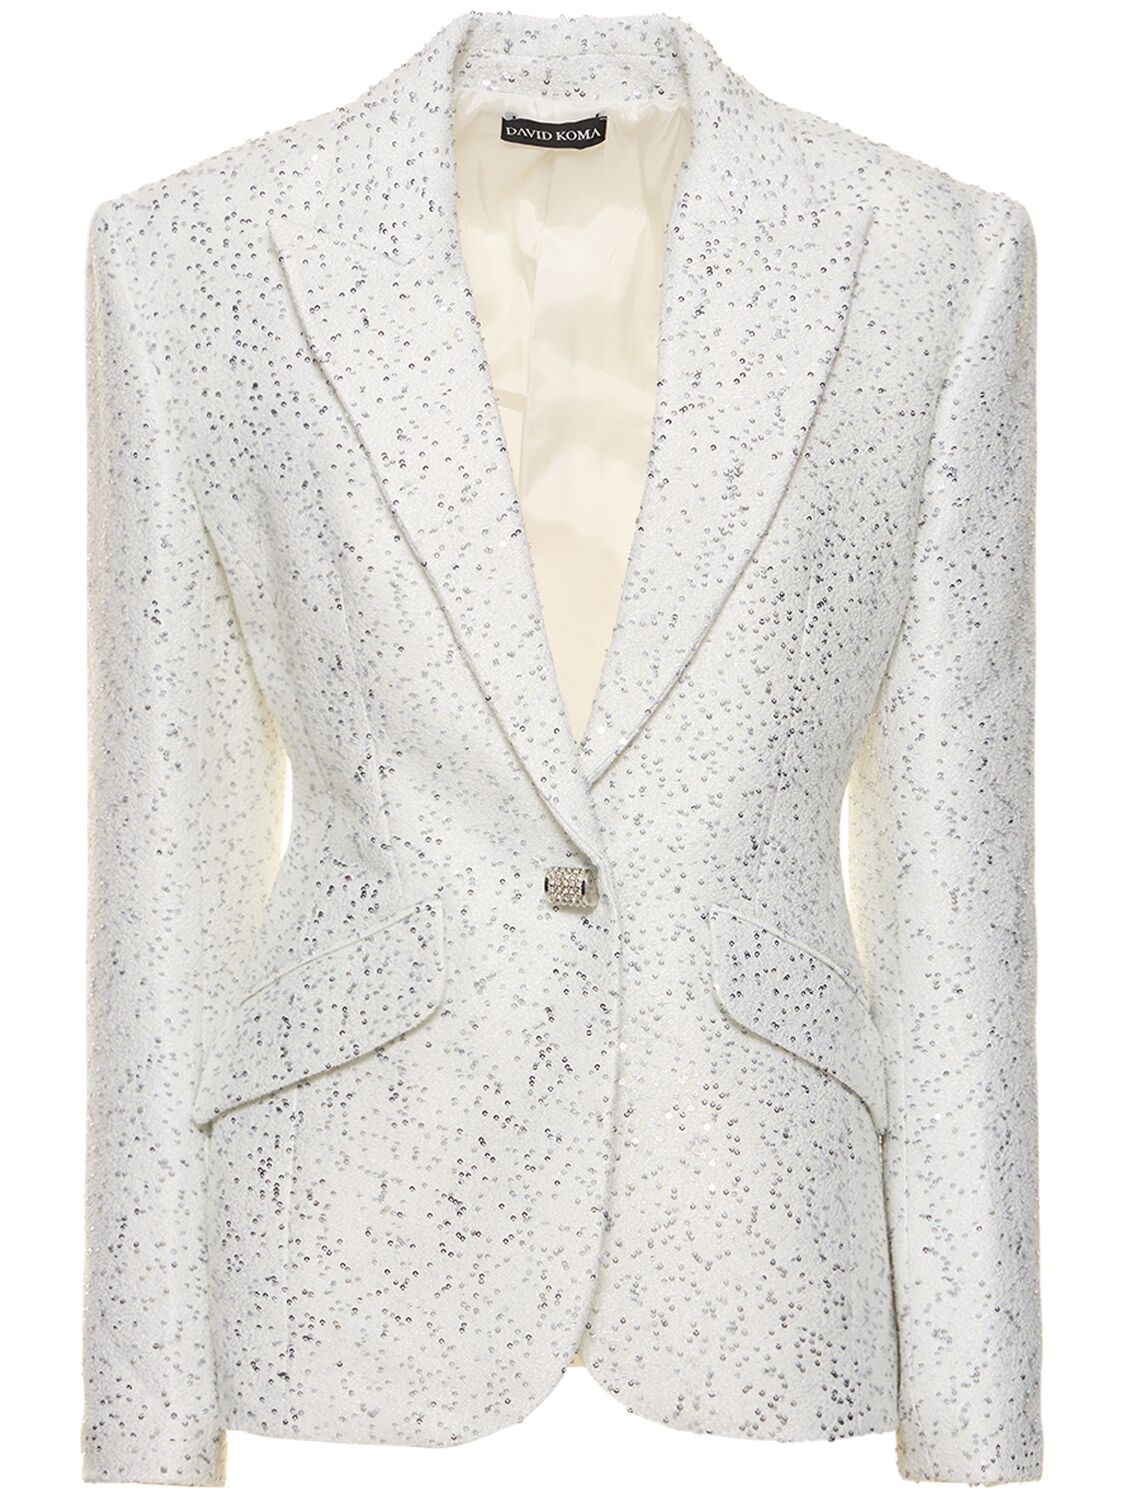 Crystal & Sequin Embellished Jacket